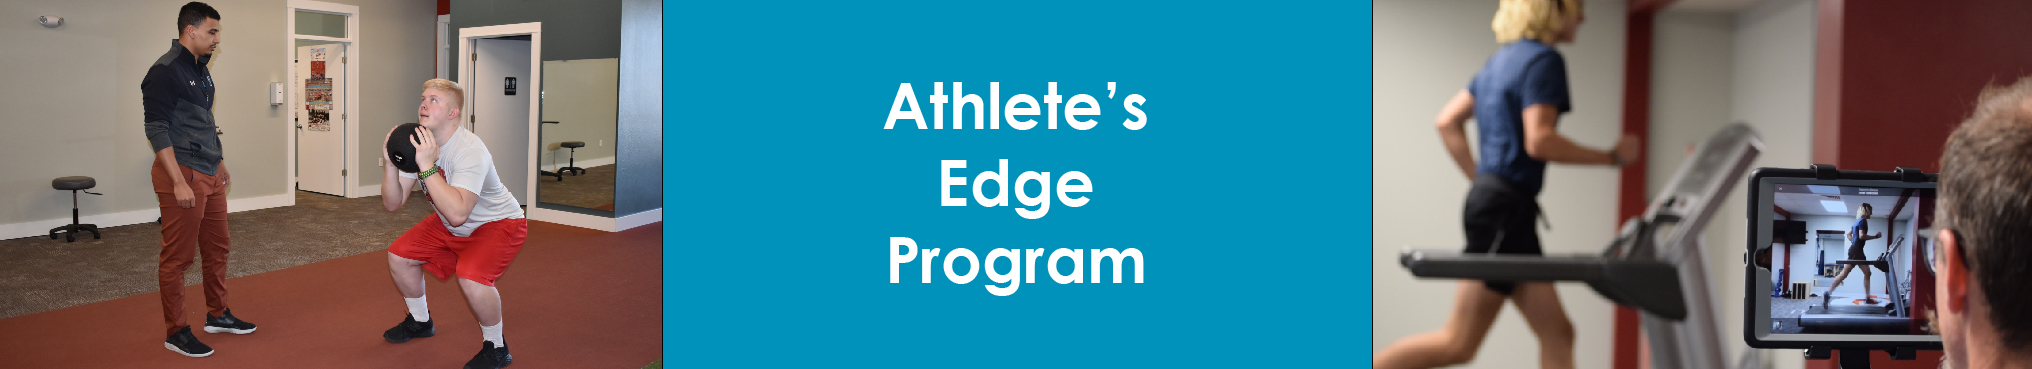 Athlete’s Edge Program